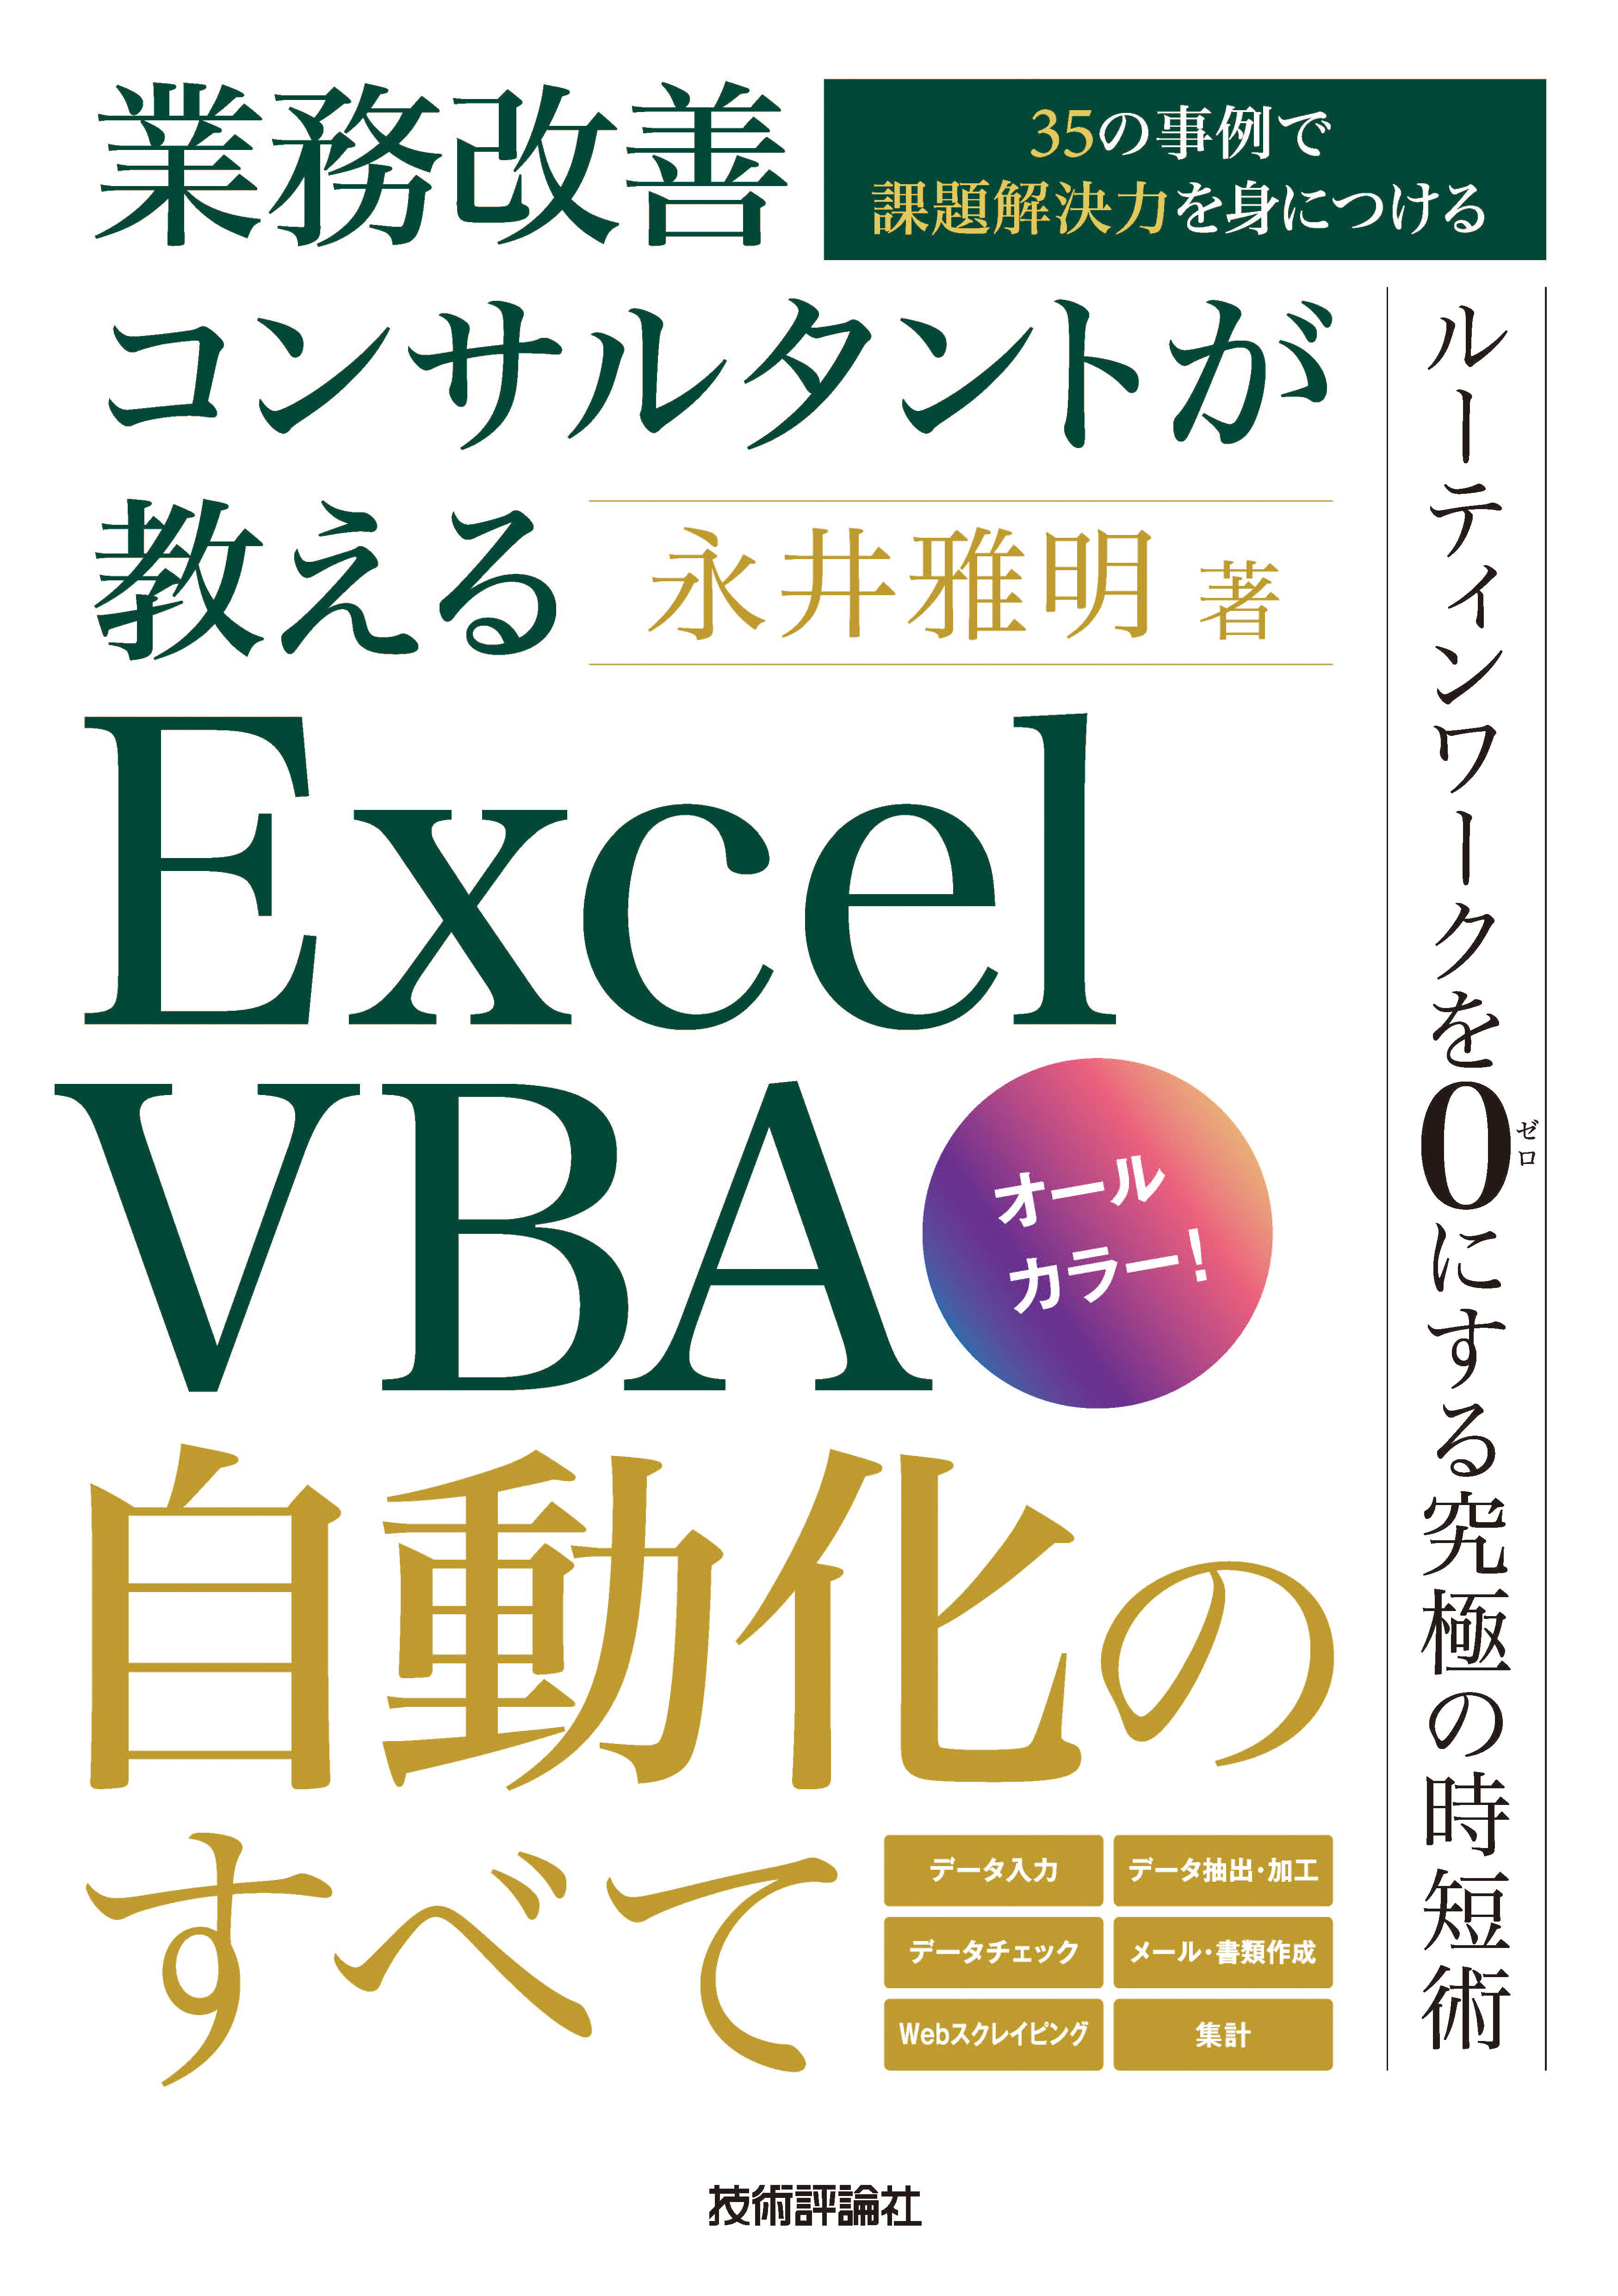 本日限定 EXCEL VBA 業務自動化 ビジテク 仕事の効率を劇的に上げるノウハウ 2…